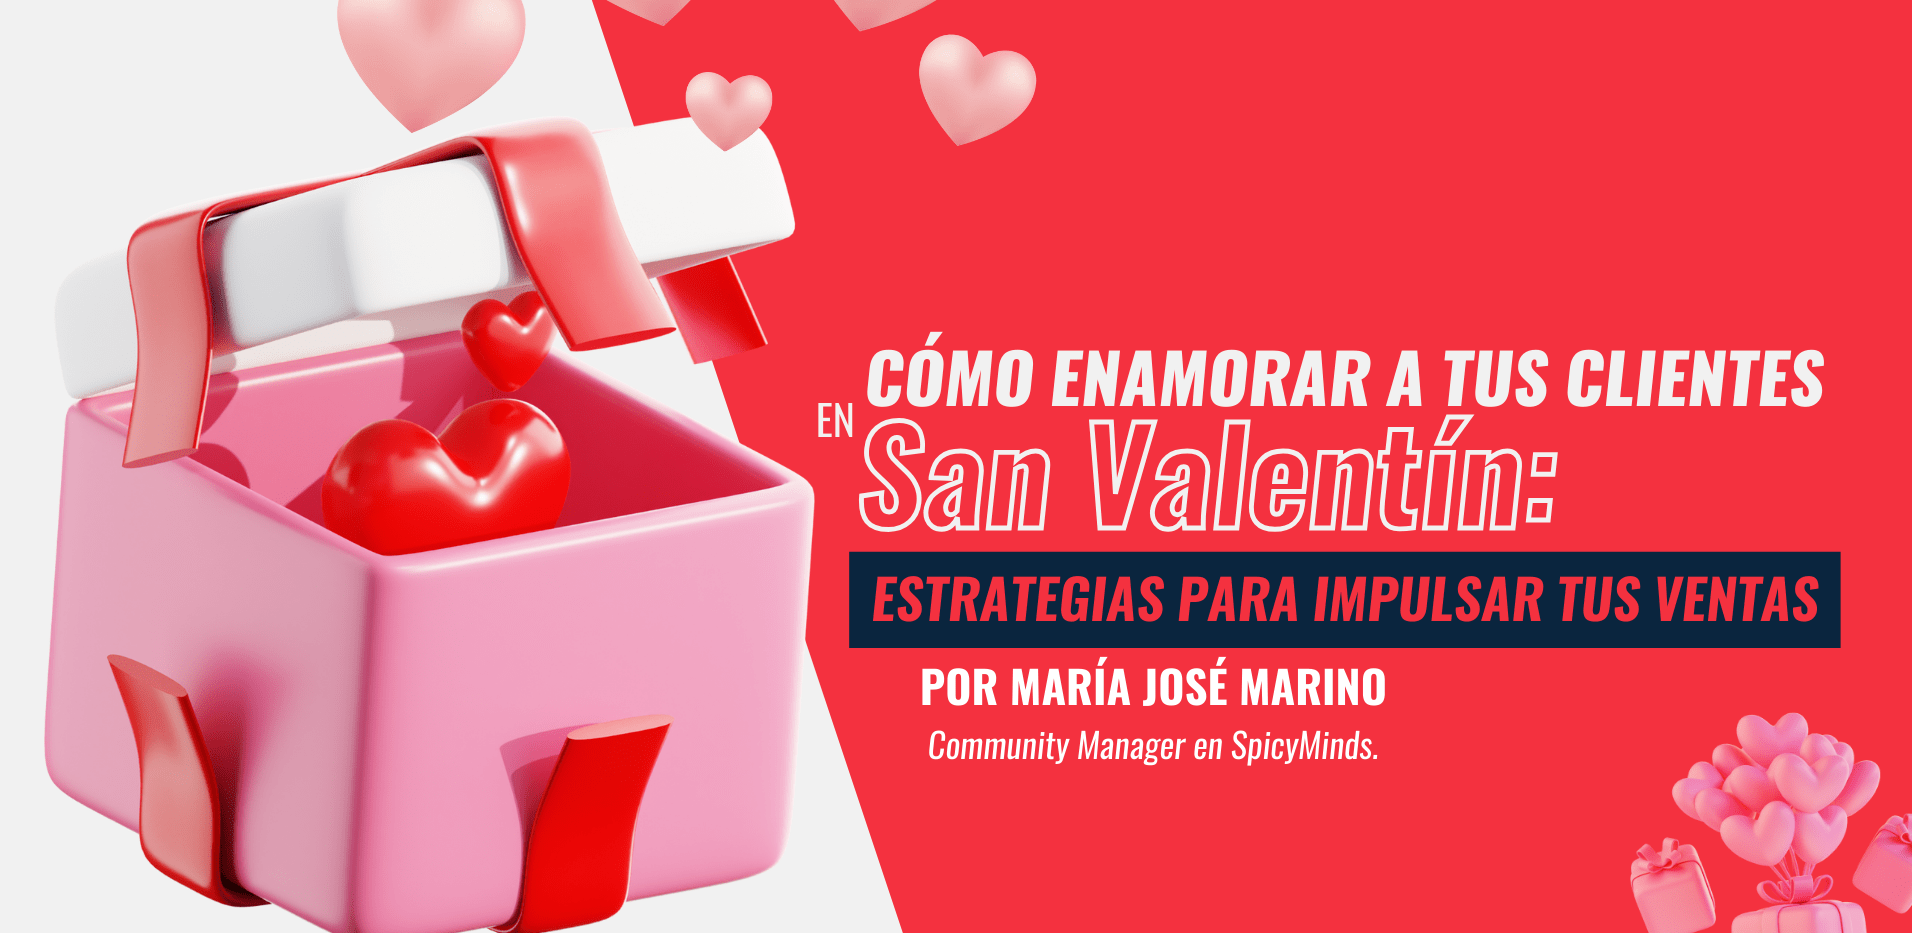 Imagen: Cómo enamorar a tus clientes en San Valentín: Estrategias para impulsar tus ventas.jpg